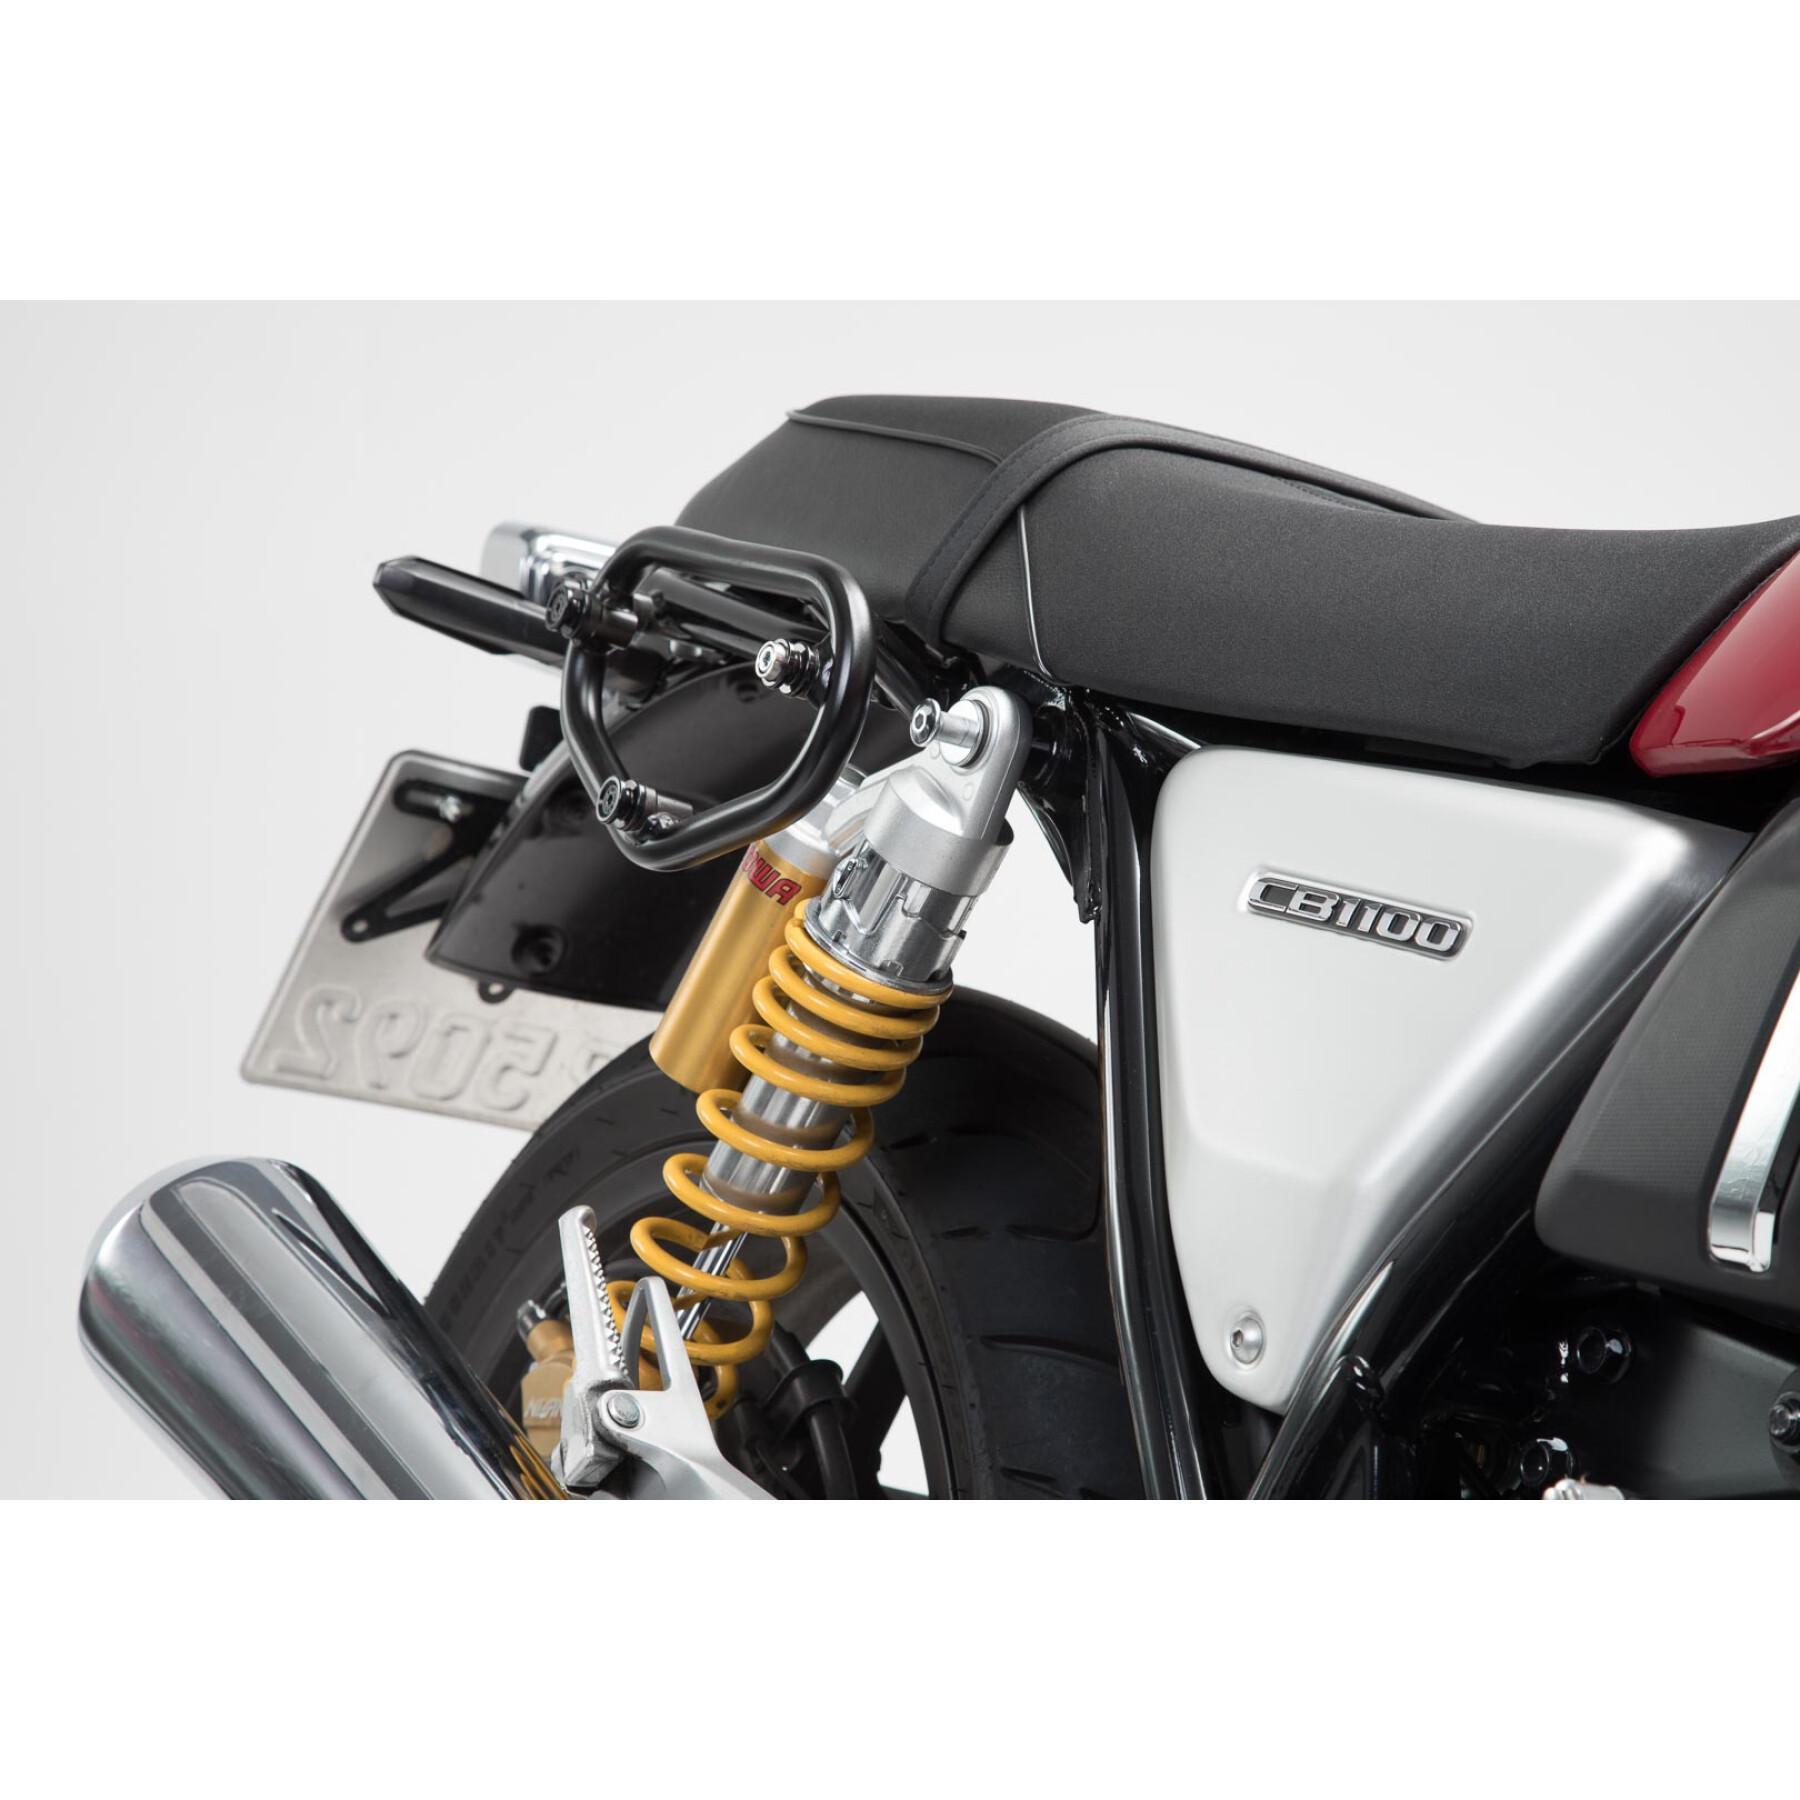 Rider's bag SW-Motech Legend Gear LC Honda CB1100 EX/RS (16-)